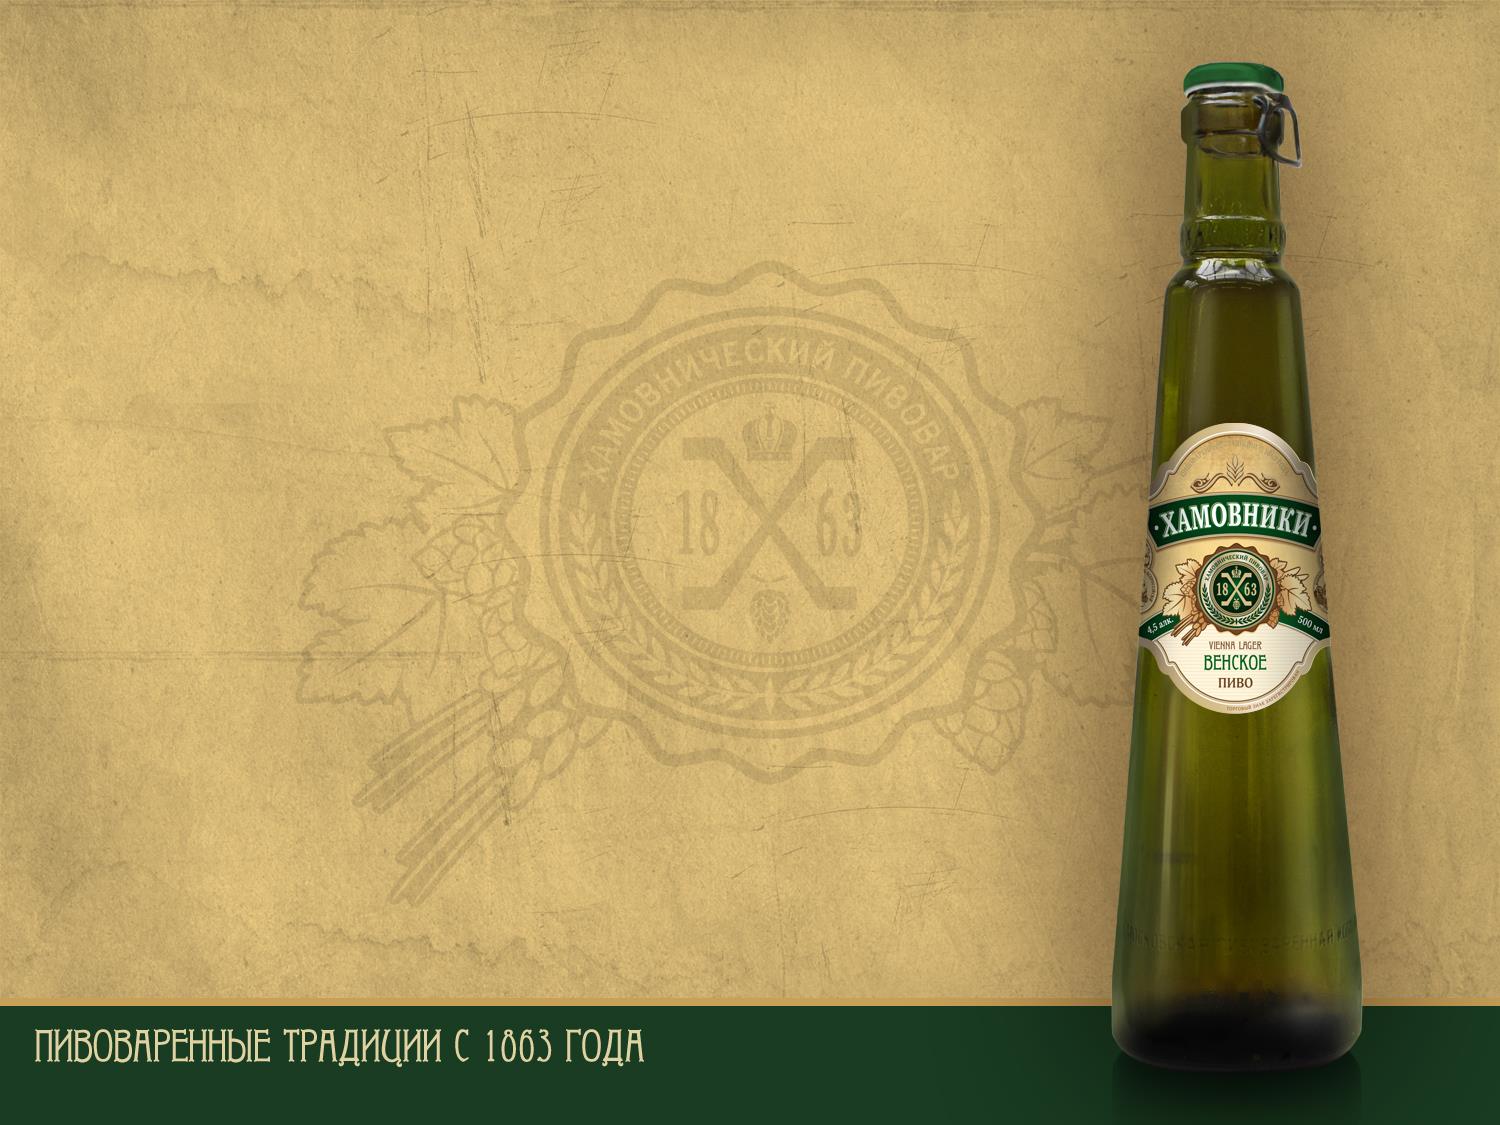 Öl Khamovniki Vienna har mjuk komplex malt smak, på grund av den unika